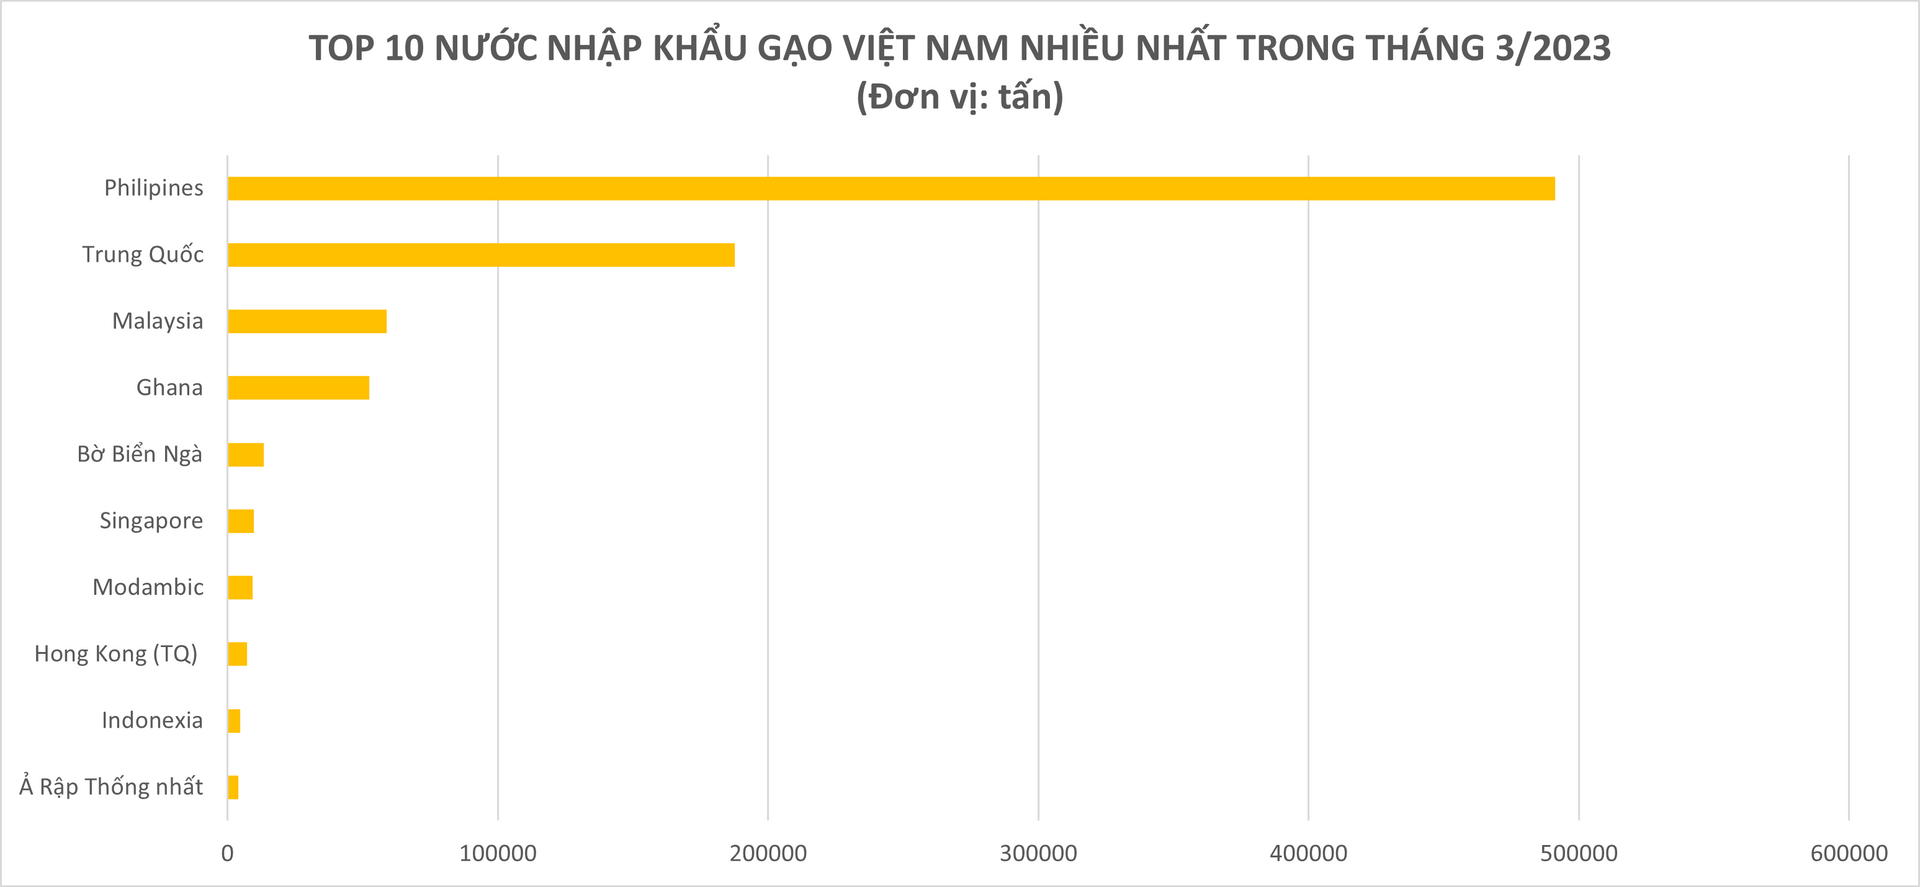 Xuất khẩu một mặt hàng chủ lực của Việt Nam trong tháng 3/2023 tăng đột biến 93,5% so với 2022, thu về gần 509 triệu USD, Trung Quốc và Philipines ồ ạt mua vào - Ảnh 2.